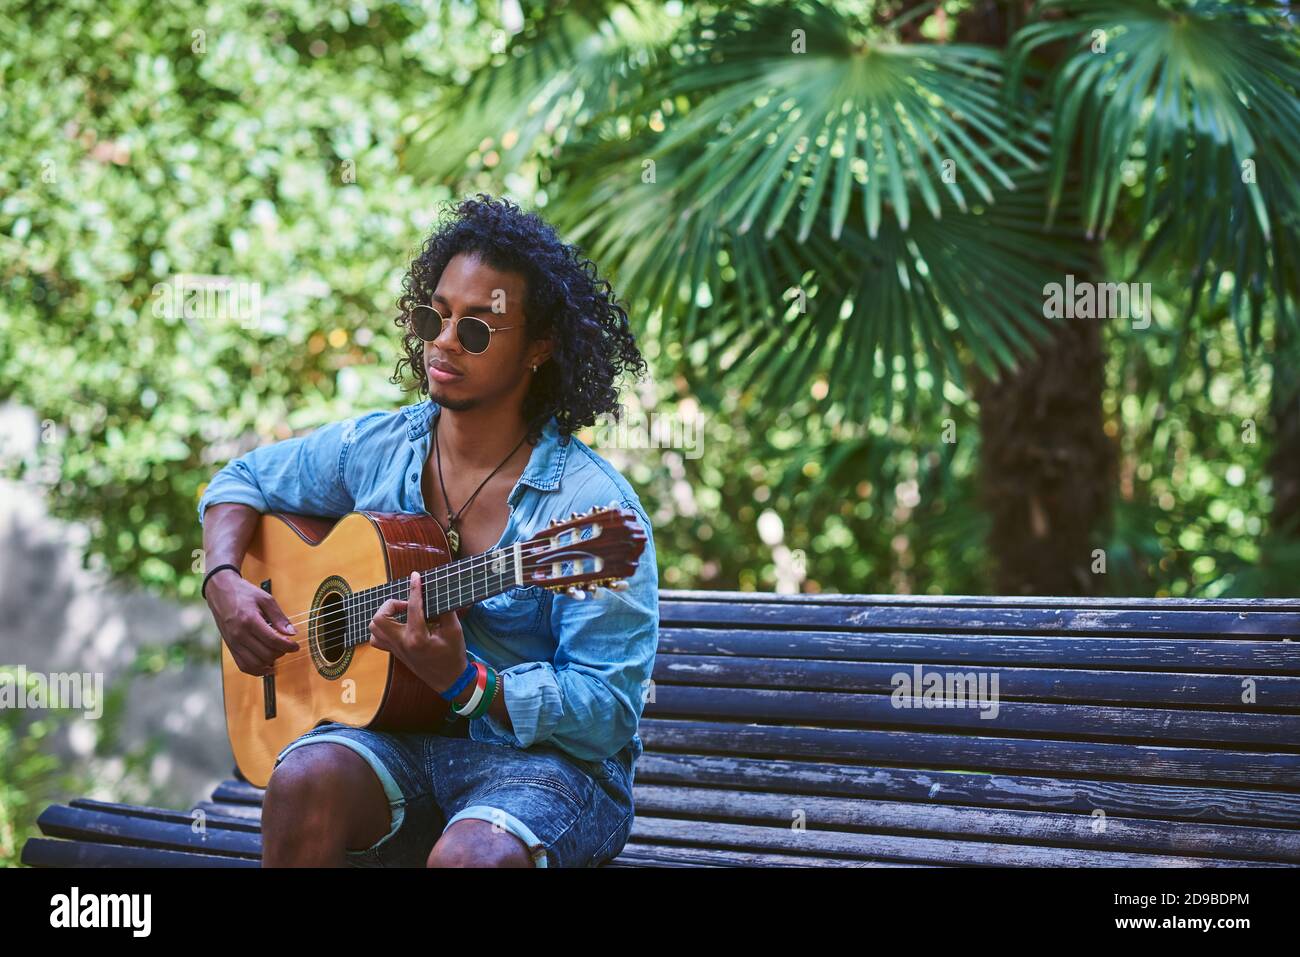 Musiker spielt Gitarre in einem schönen Park. Er ist von Vegetation umgeben. Stockfoto